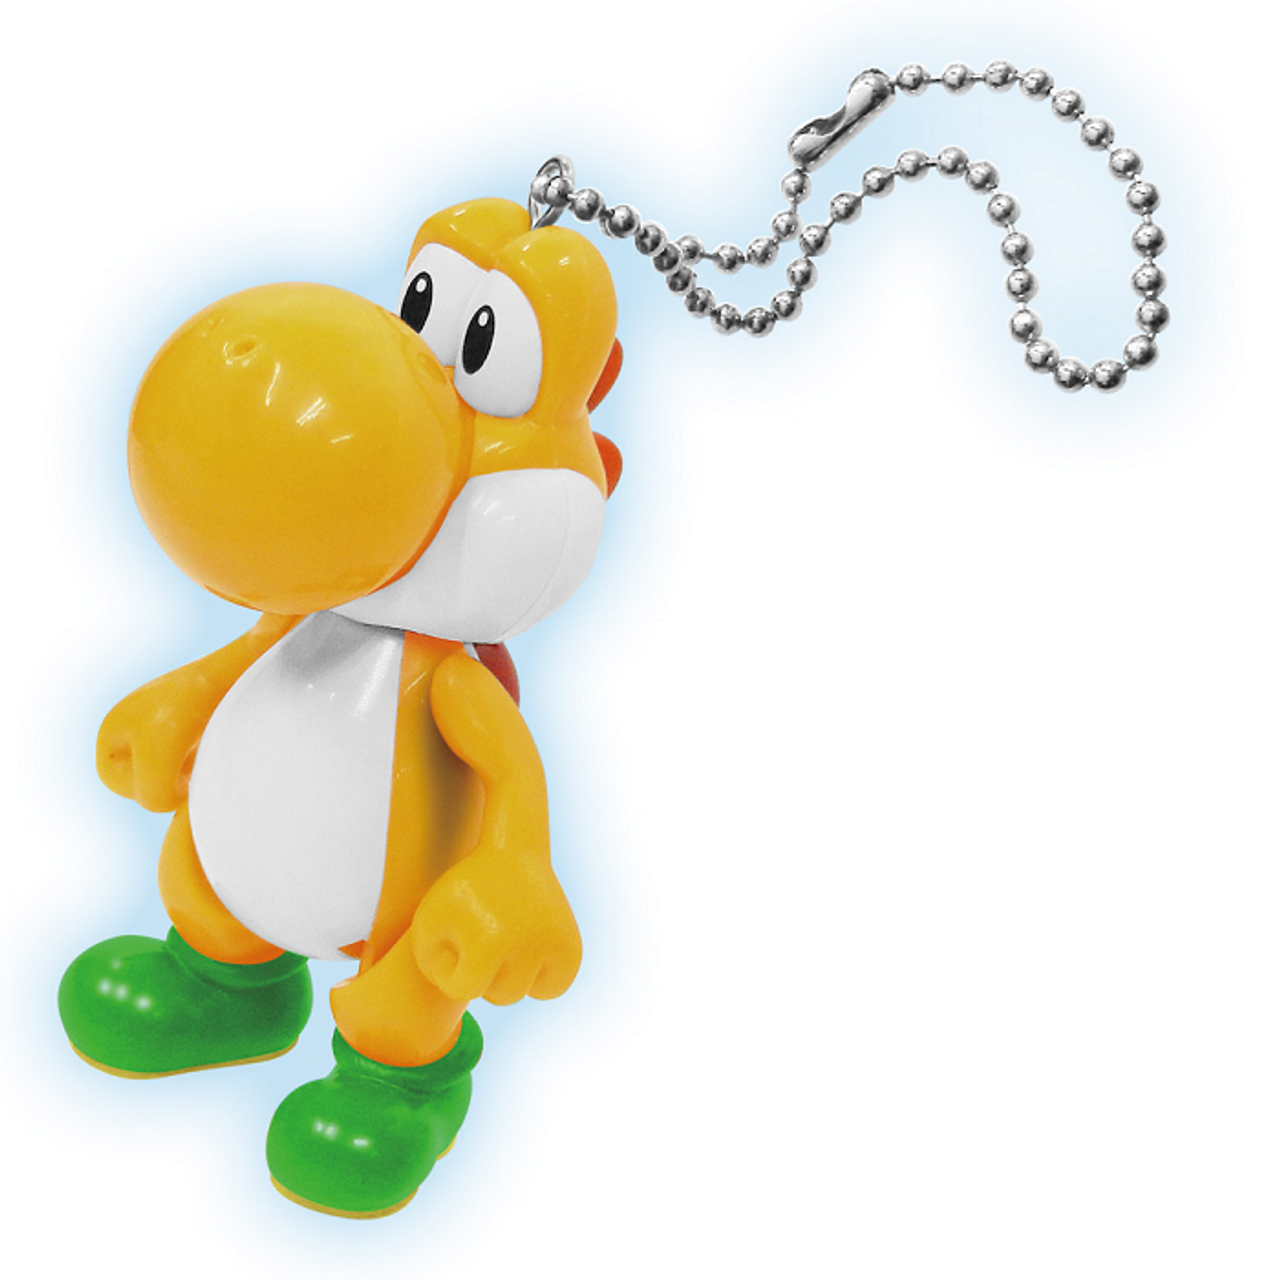 Super Mario Swing Mascot Ver.2 Yellow Yoshi